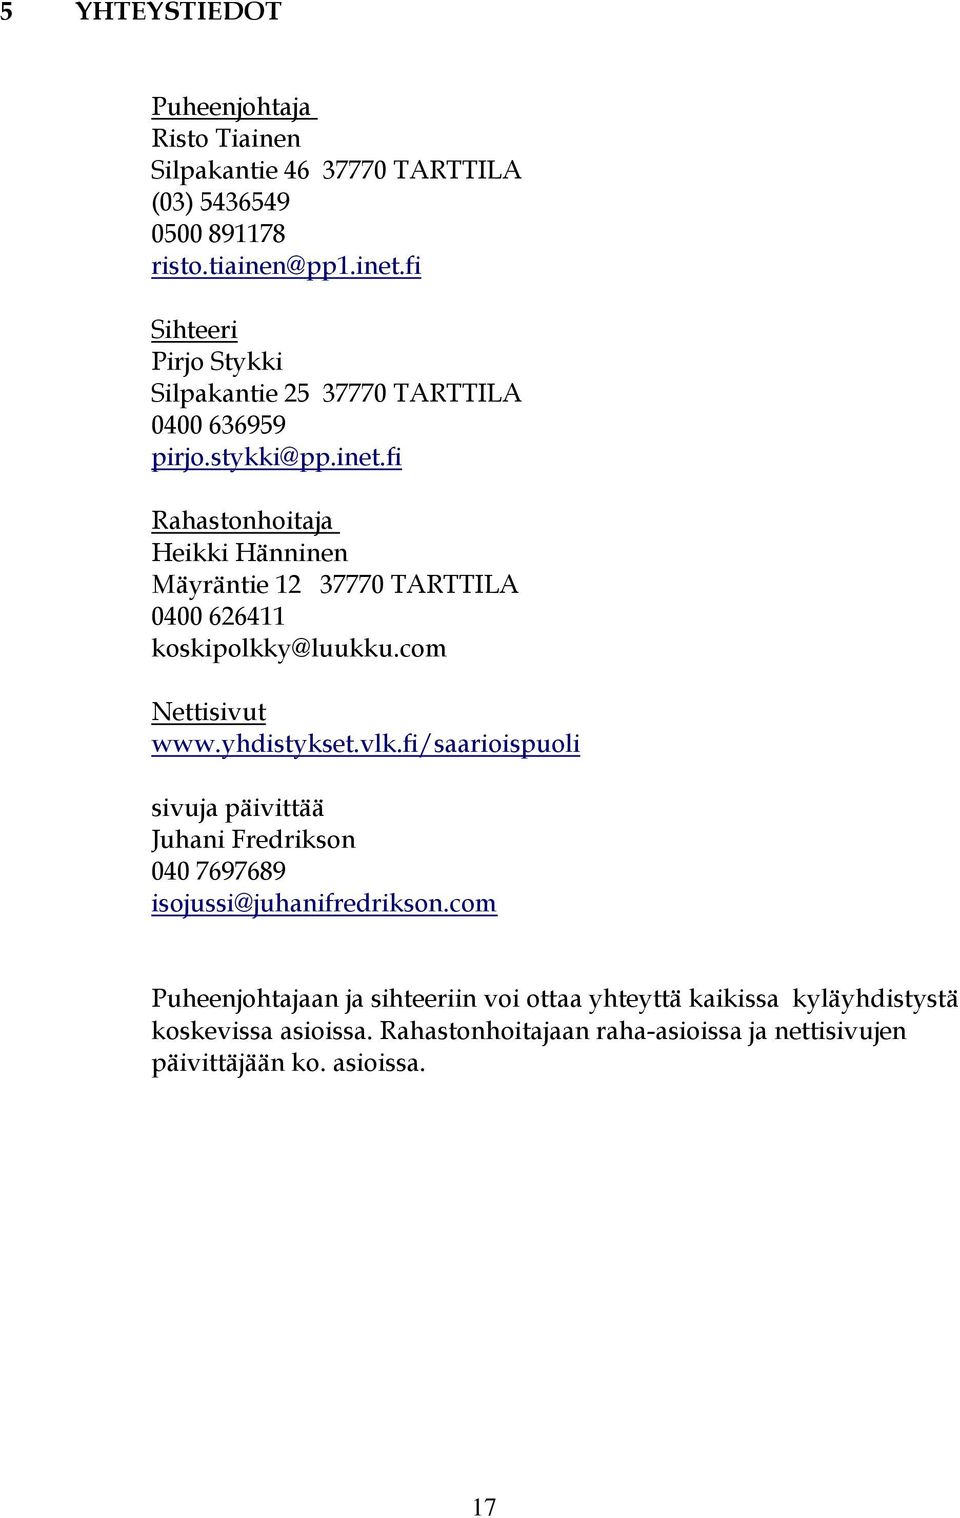 fi Rahastonhoitaja Heikki Hänninen Mäyräntie 12 37770 TARTTILA 0400 626411 koskipolkky@luukku.com Nettisivut www.yhdistykset.vlk.